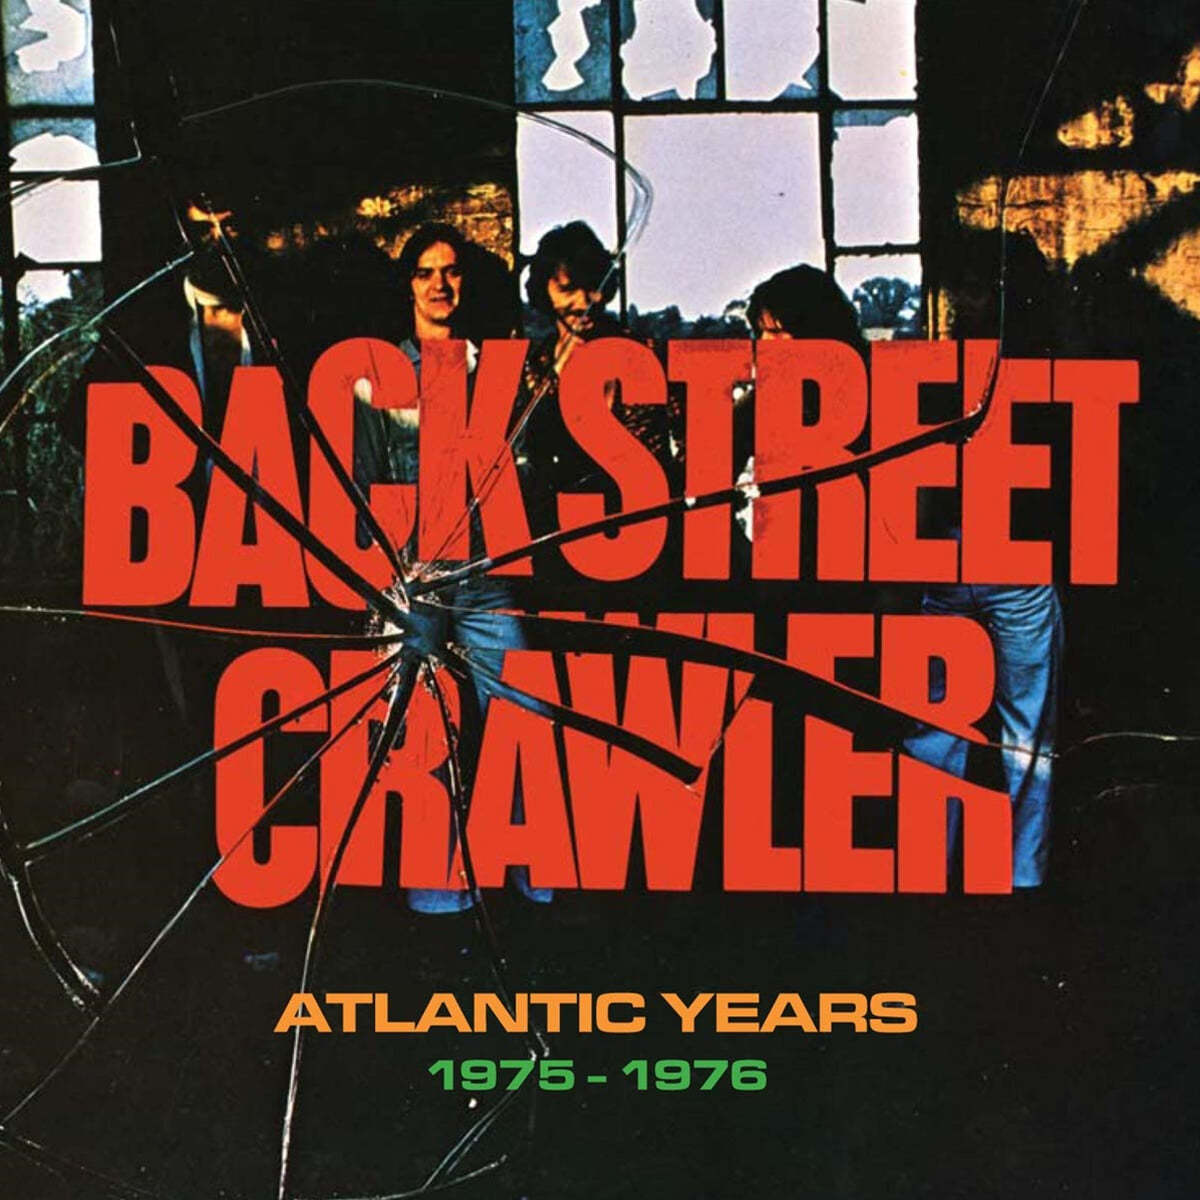 Back Street Crawler (백 스트리트 크로울러) - Atlantic Years 1975-1976